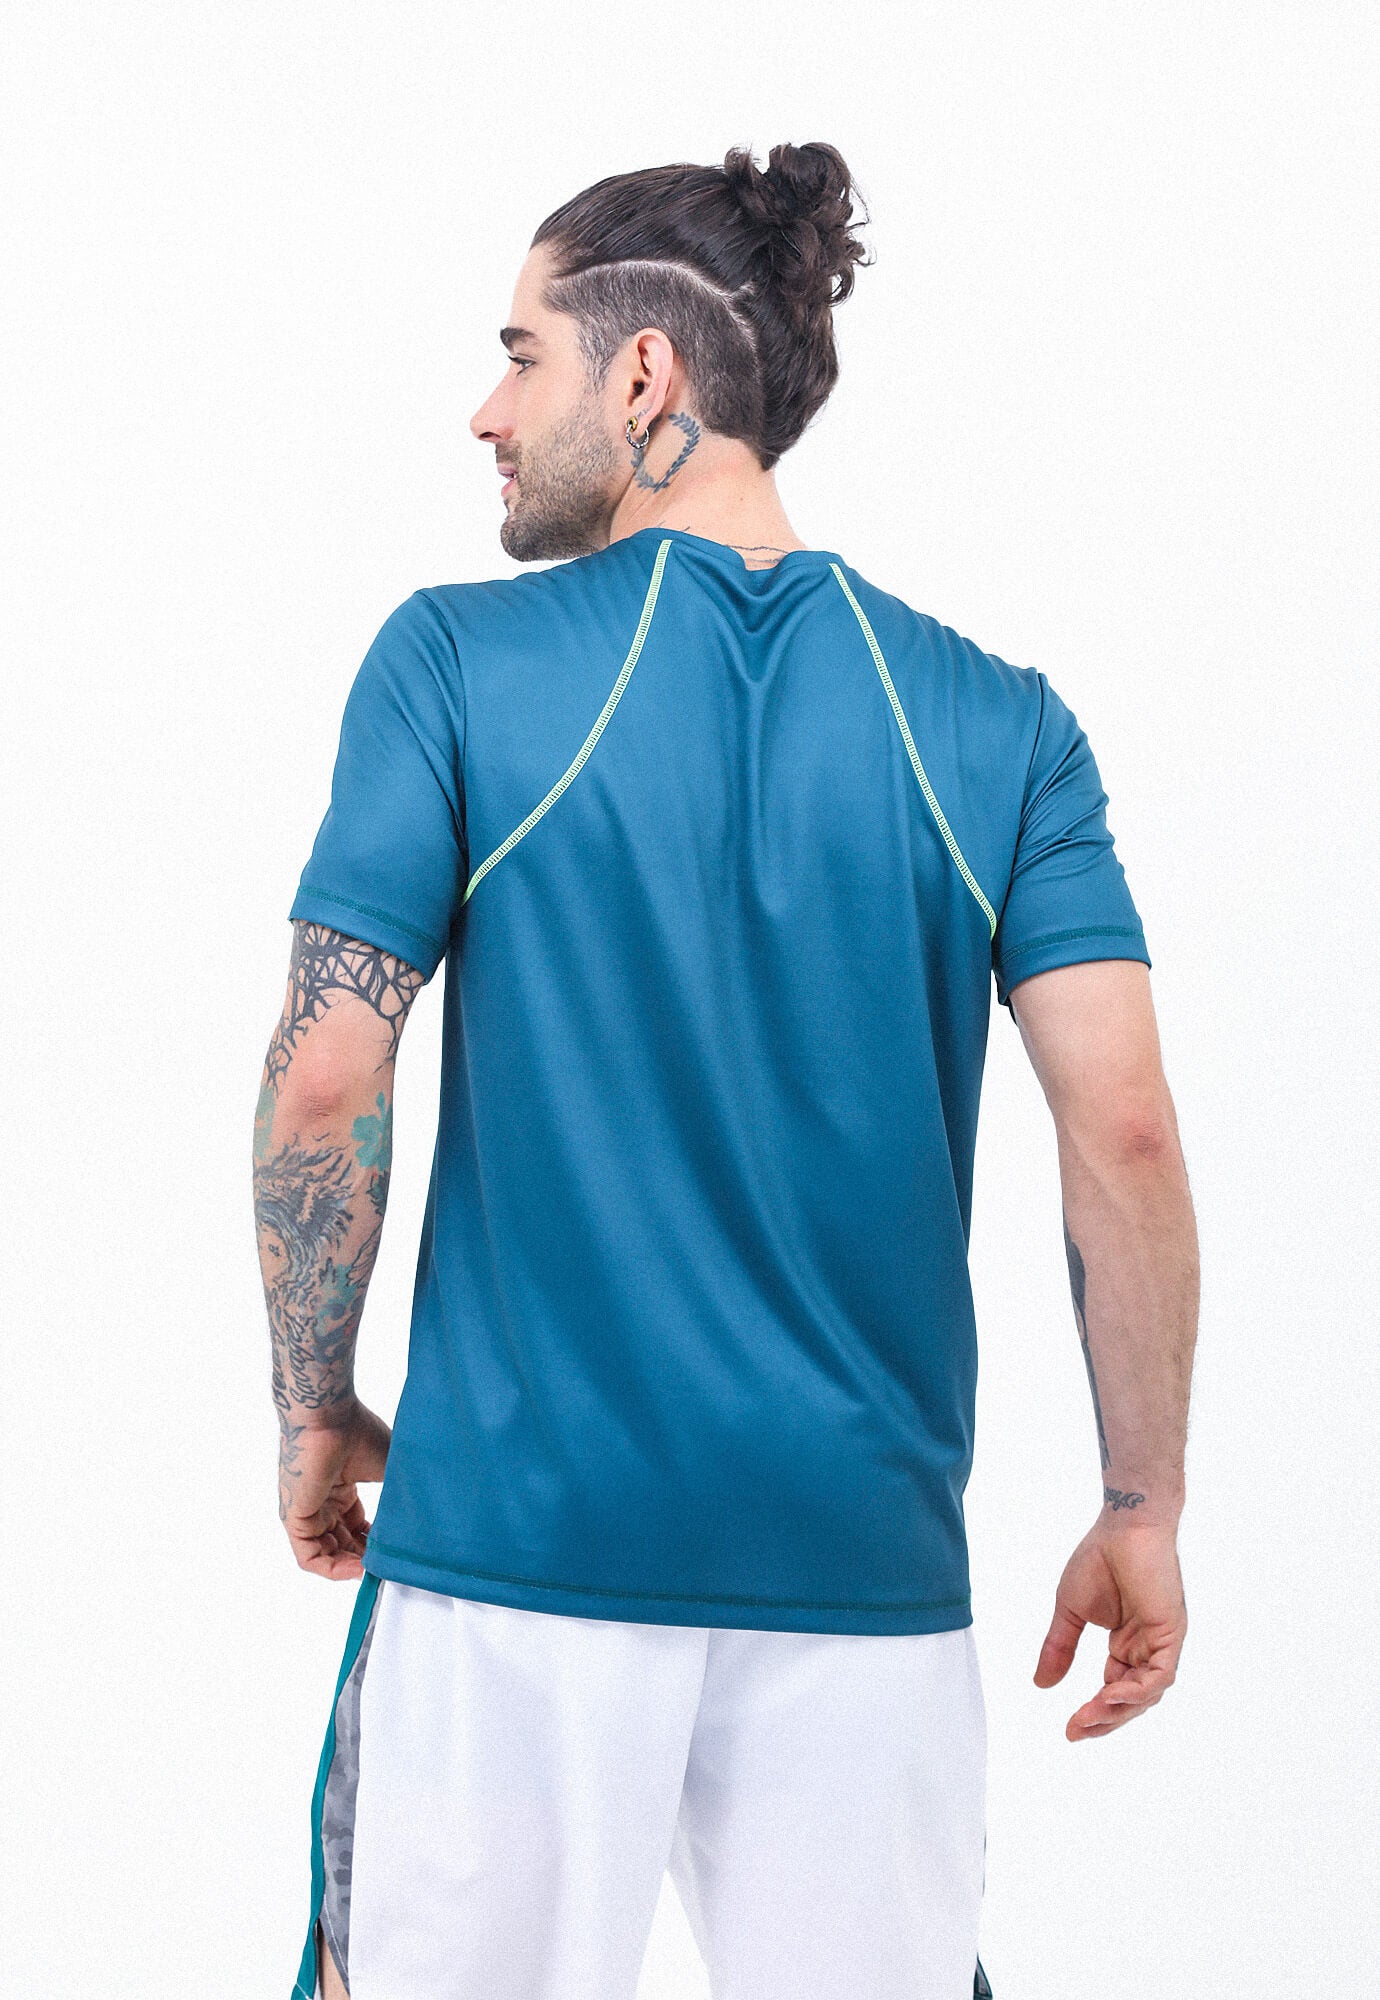 Camiseta deportiva verde esmeralda manga corto cuello redondo espalda en malla transpirable para hombre